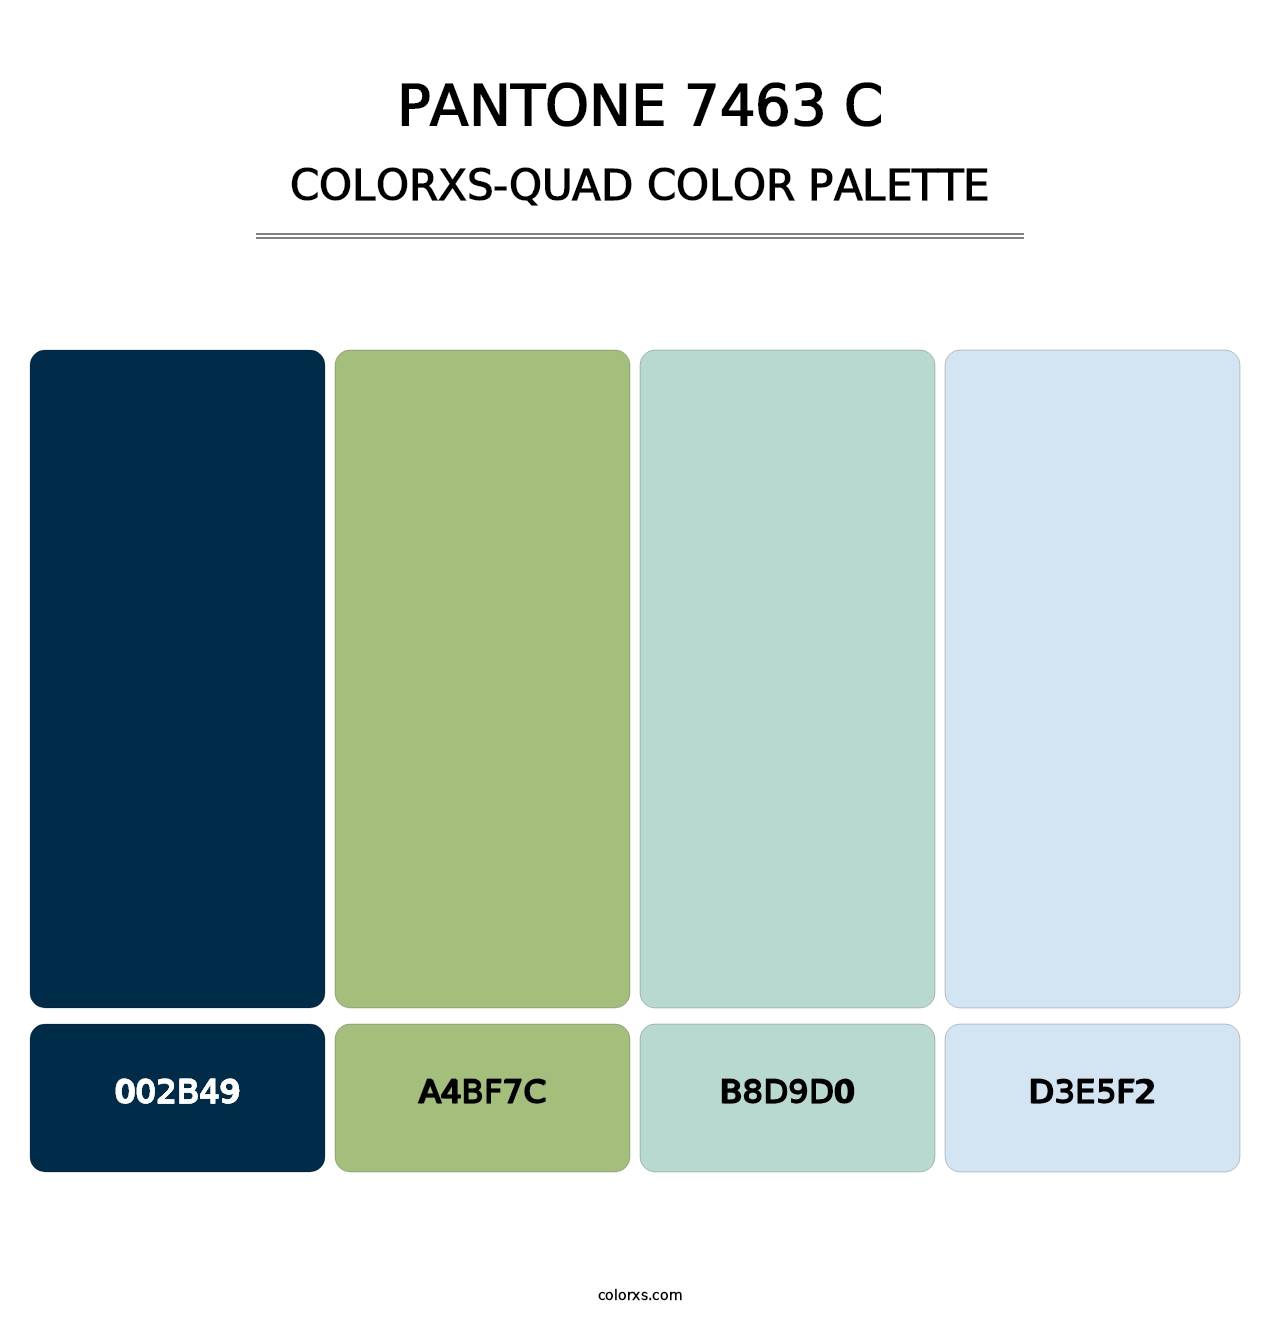 PANTONE 7463 C - Colorxs Quad Palette